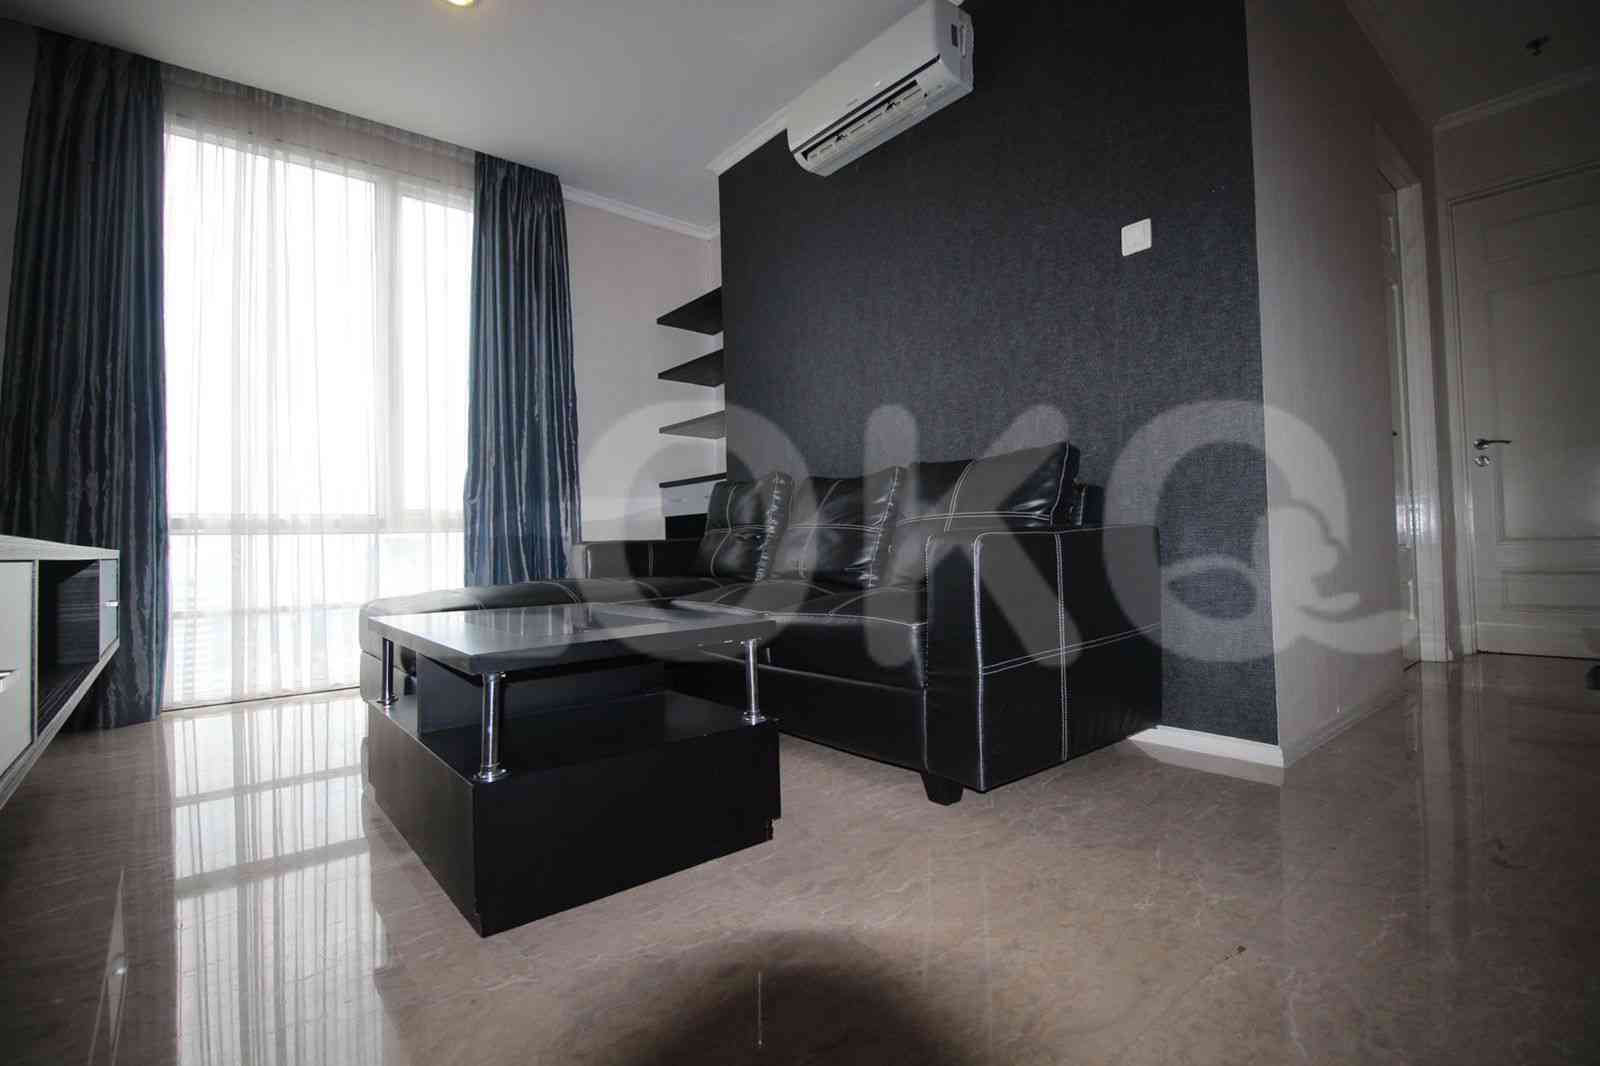 1 Bedroom on 38th Floor for Rent in FX Residence - fsu3e2 1